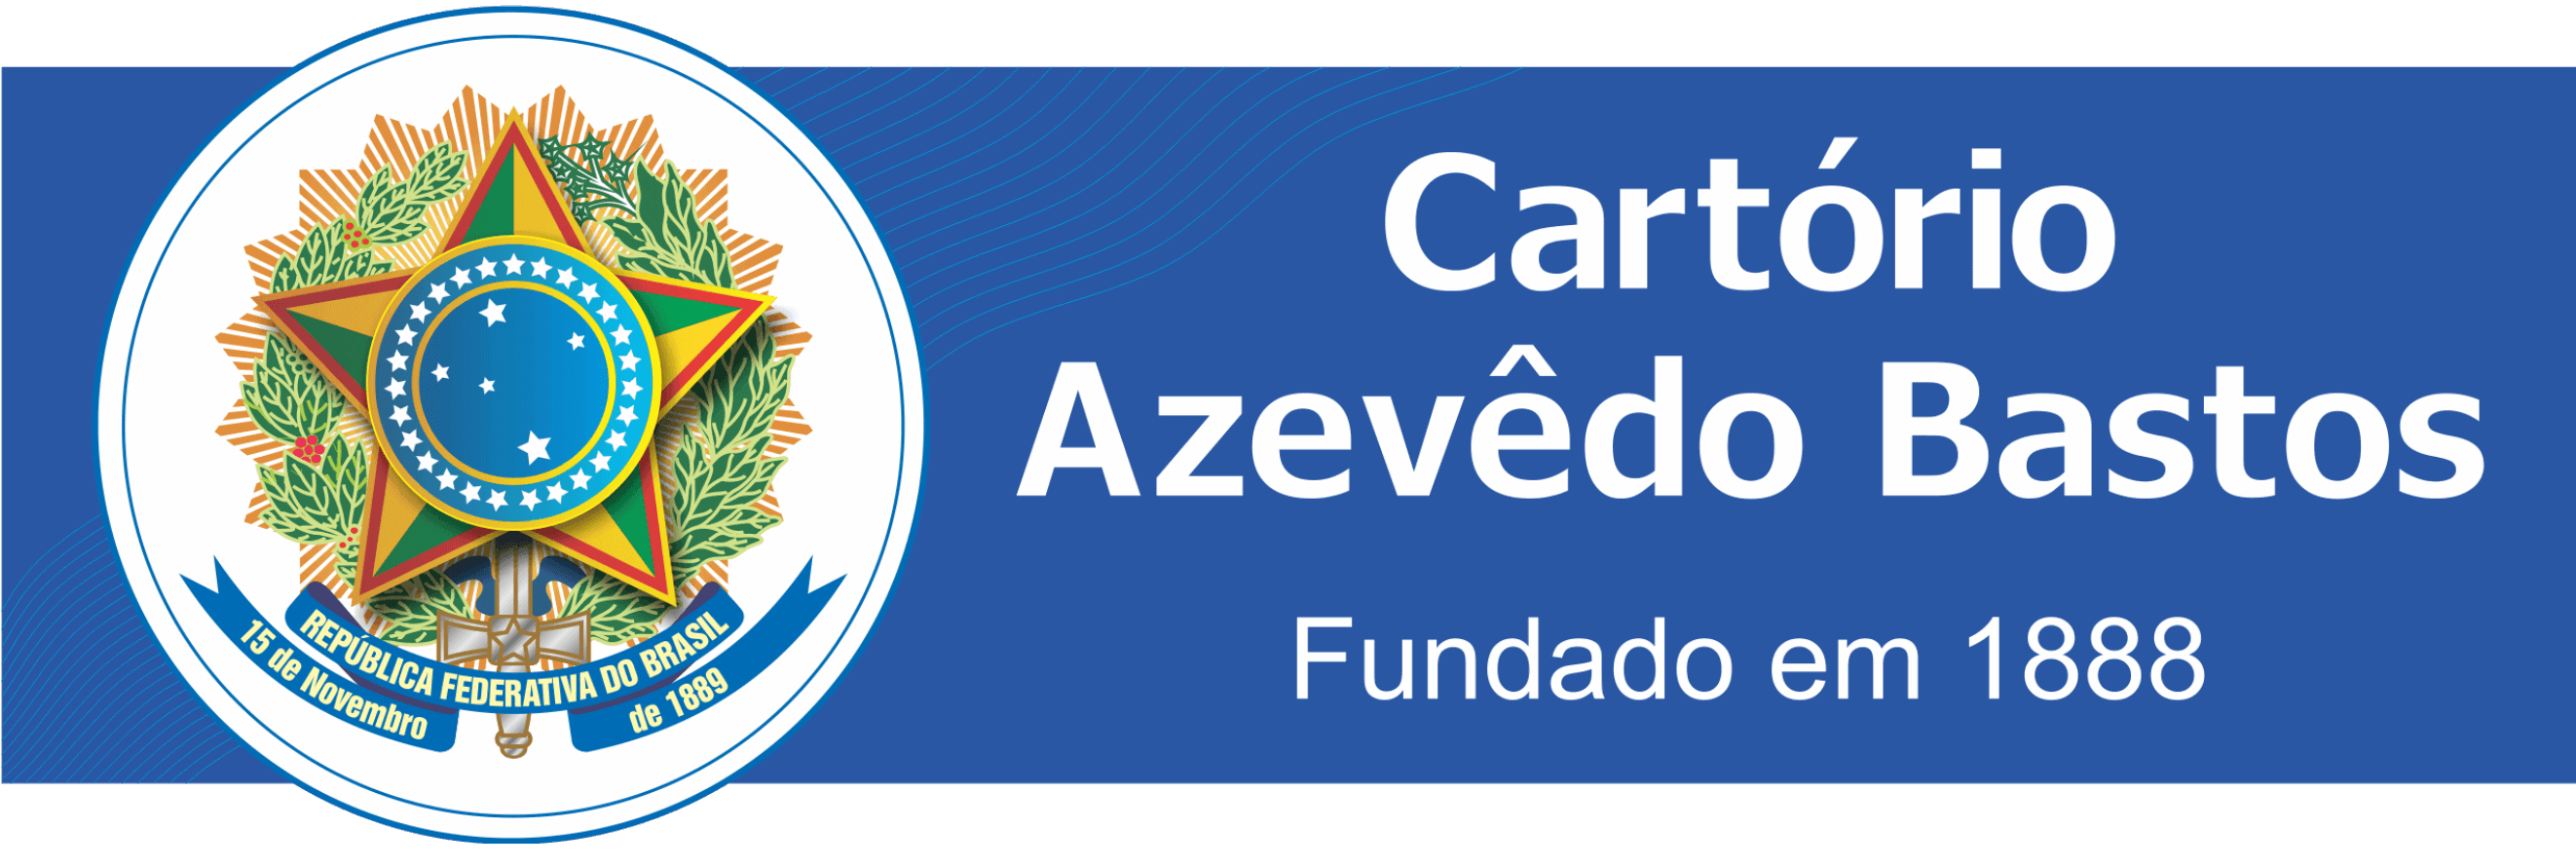 Cartorio logo